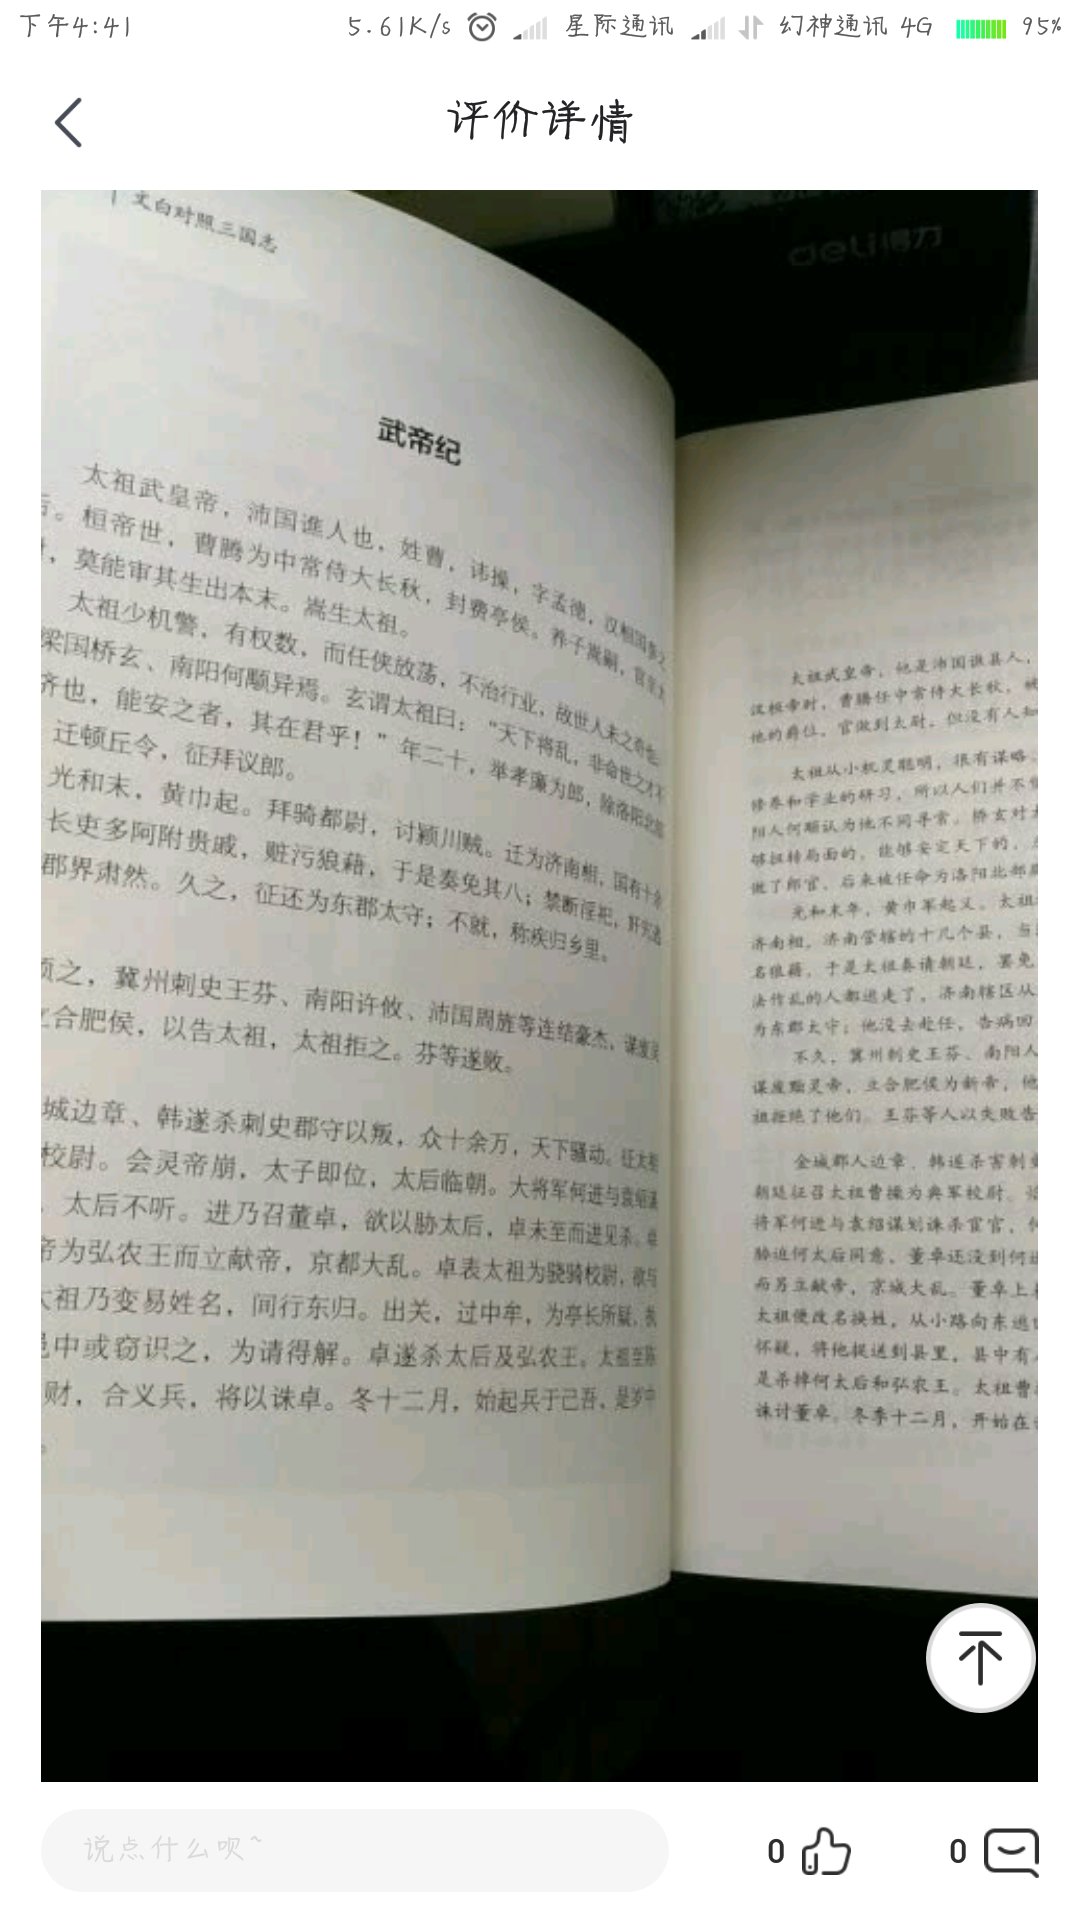 书不错，译文翻译也很好，纸张质量不错，很喜欢，关键是全、无删减。